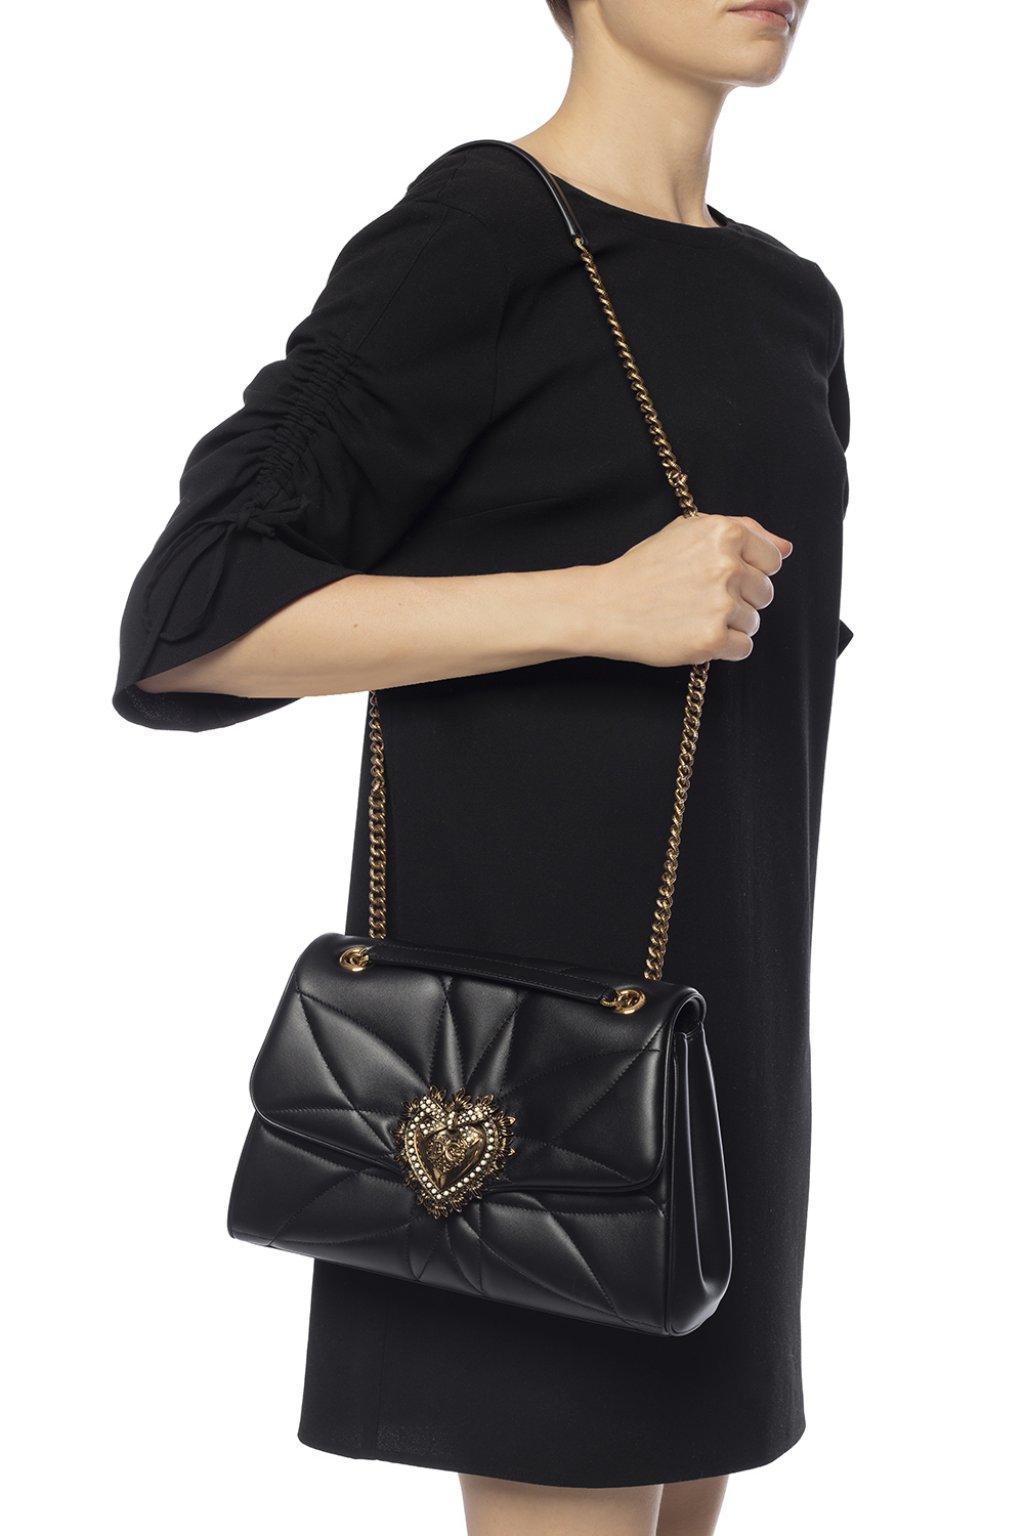 Dolce & Gabbana 'devotion' Shoulder Bag in Black - Lyst